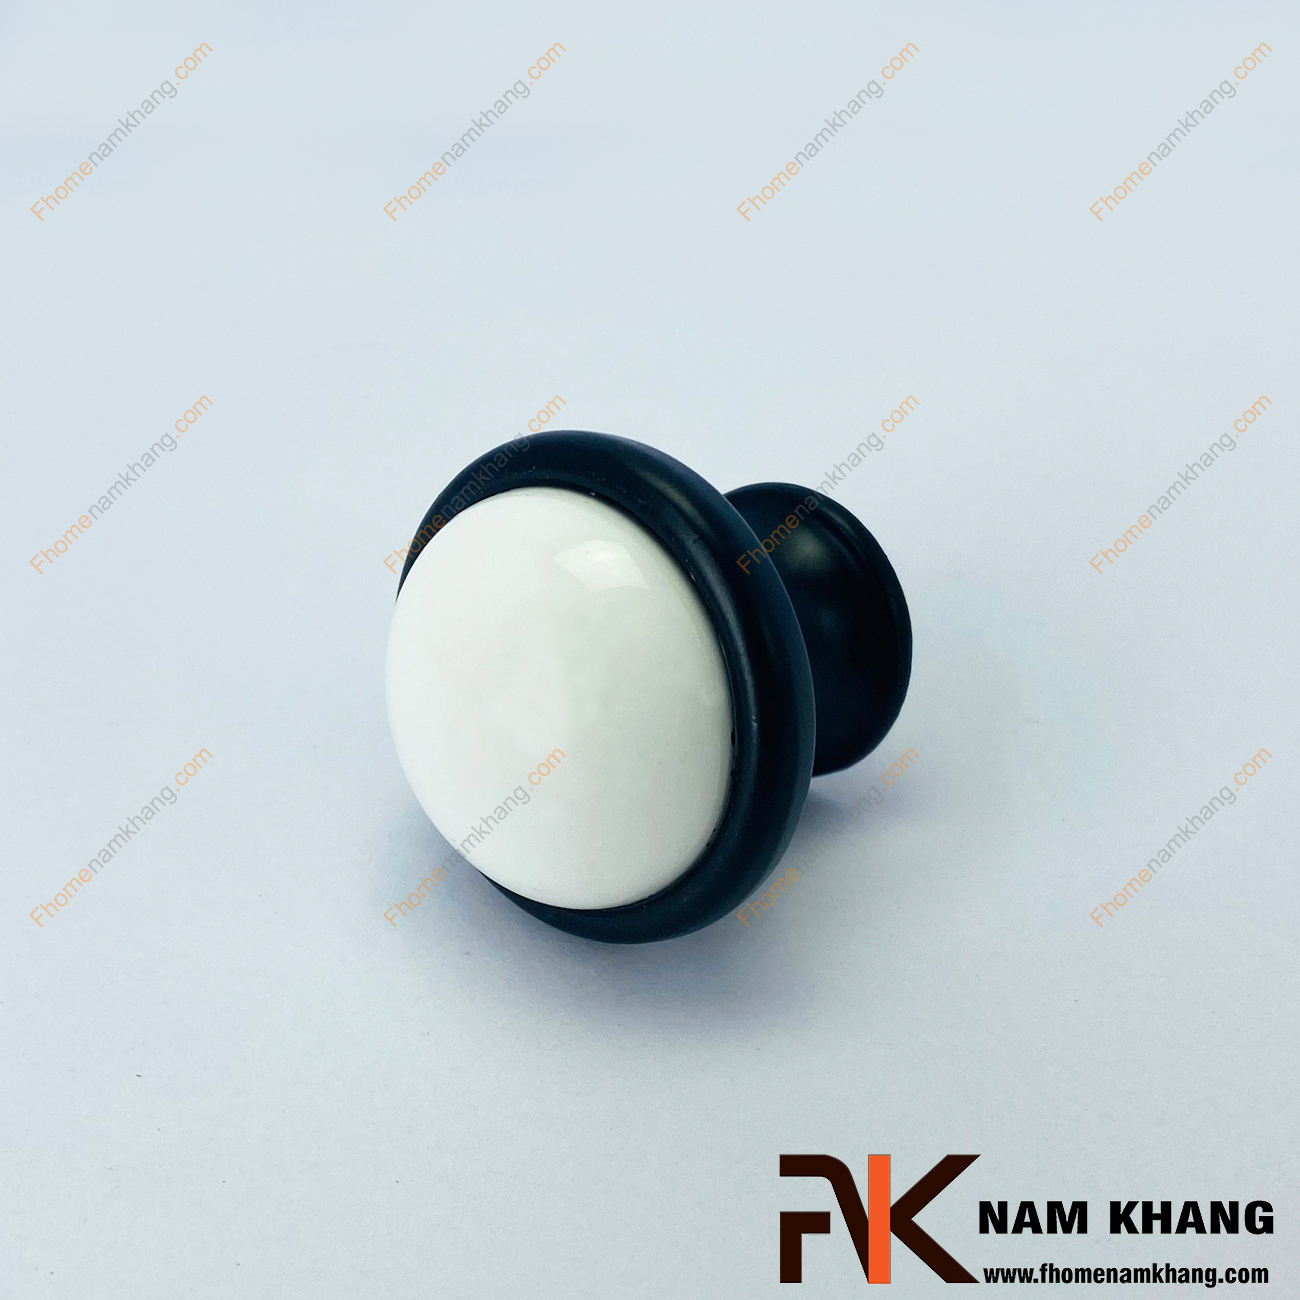 Núm nắm tủ dạng tròn màu đen trắng NK322-D - mẫu núm tay nắm tủ có thiết kế rất đơn giản lấy sự phối hợp nhẹ nhàng giữa sứ cao cấp và hợp kim mạ màu đen bao bọc xung quanh.